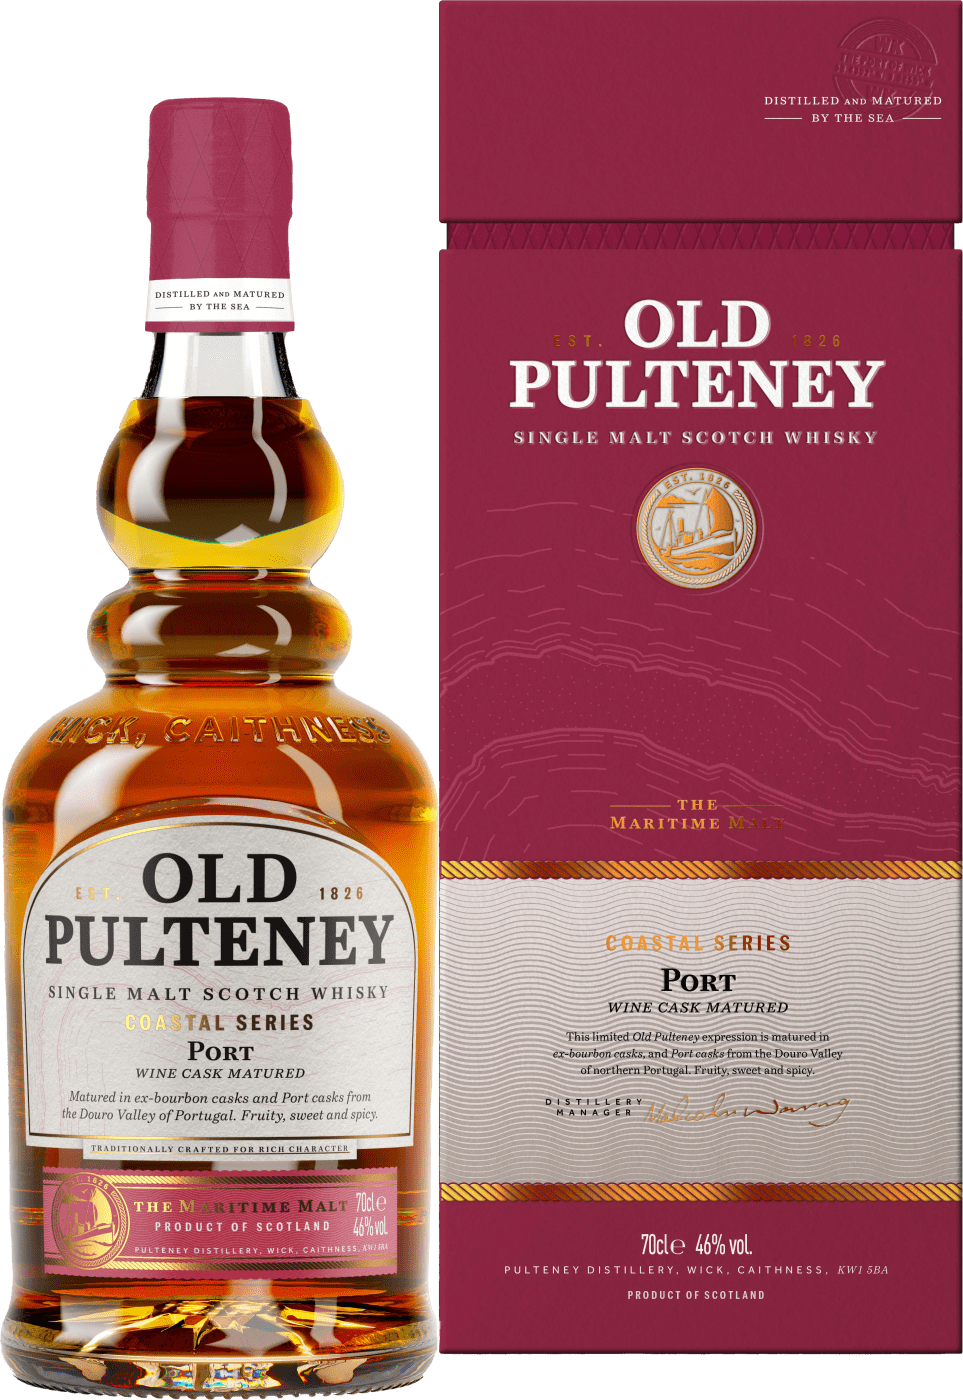 Old Pulteney »Coastal Series« Port Cask Single Malt Scotch Whisky